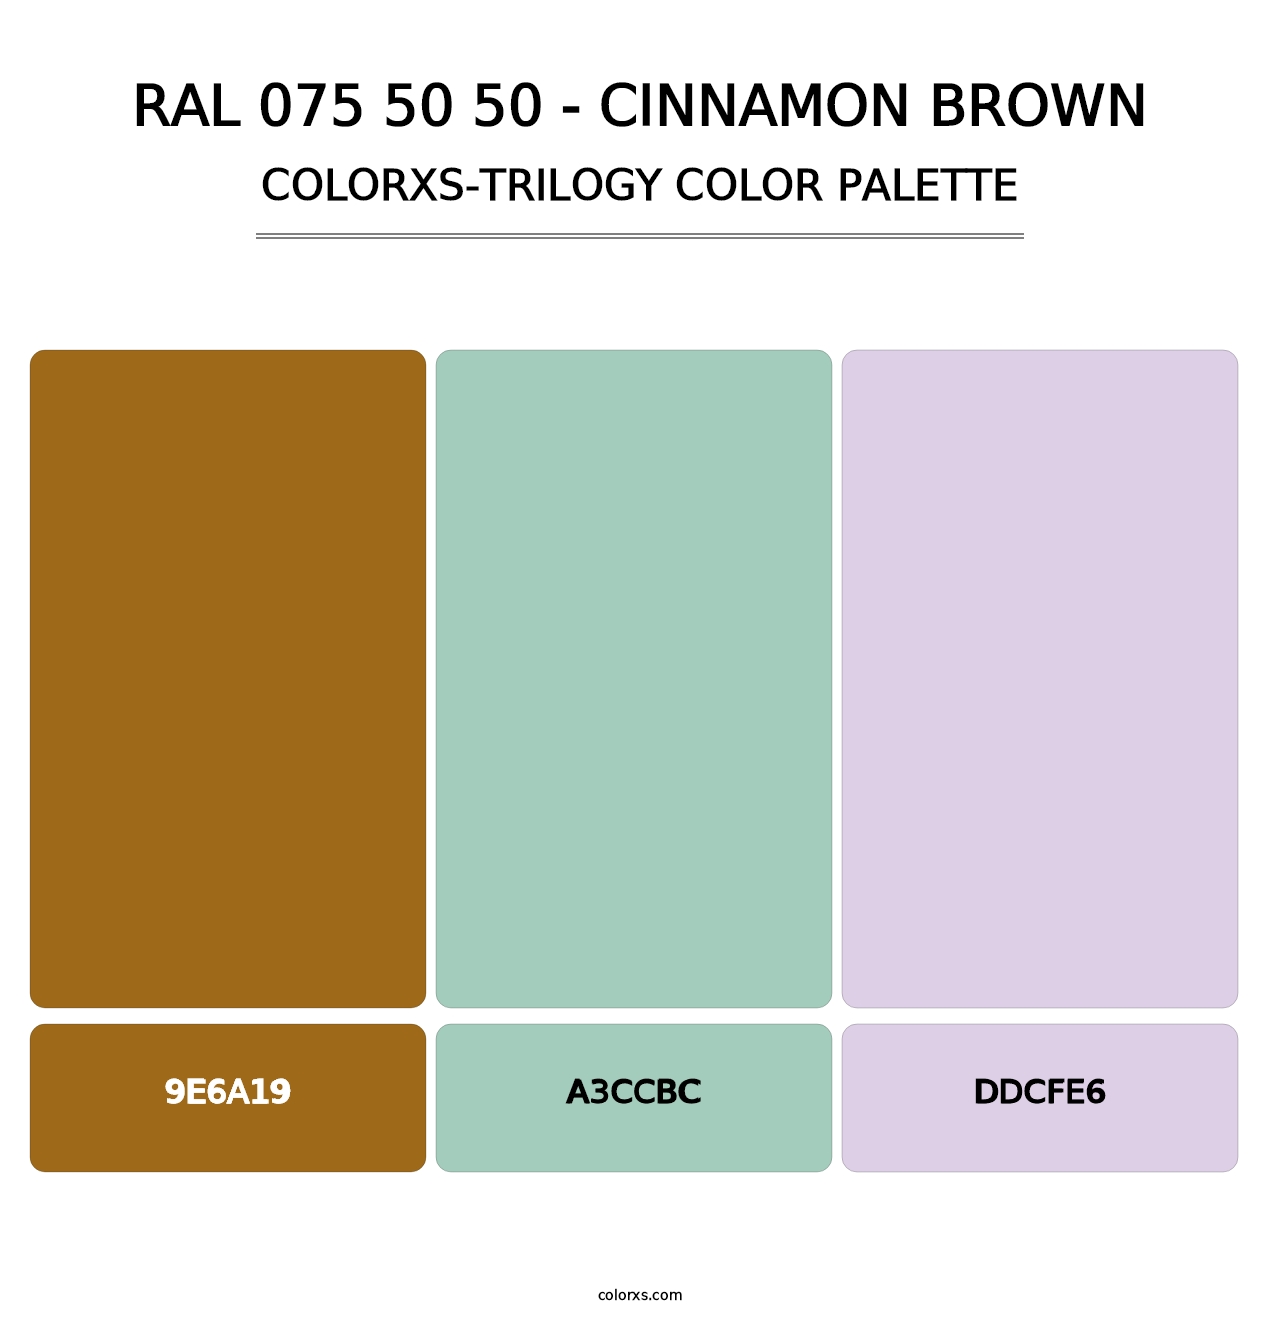 RAL 075 50 50 - Cinnamon Brown - Colorxs Trilogy Palette